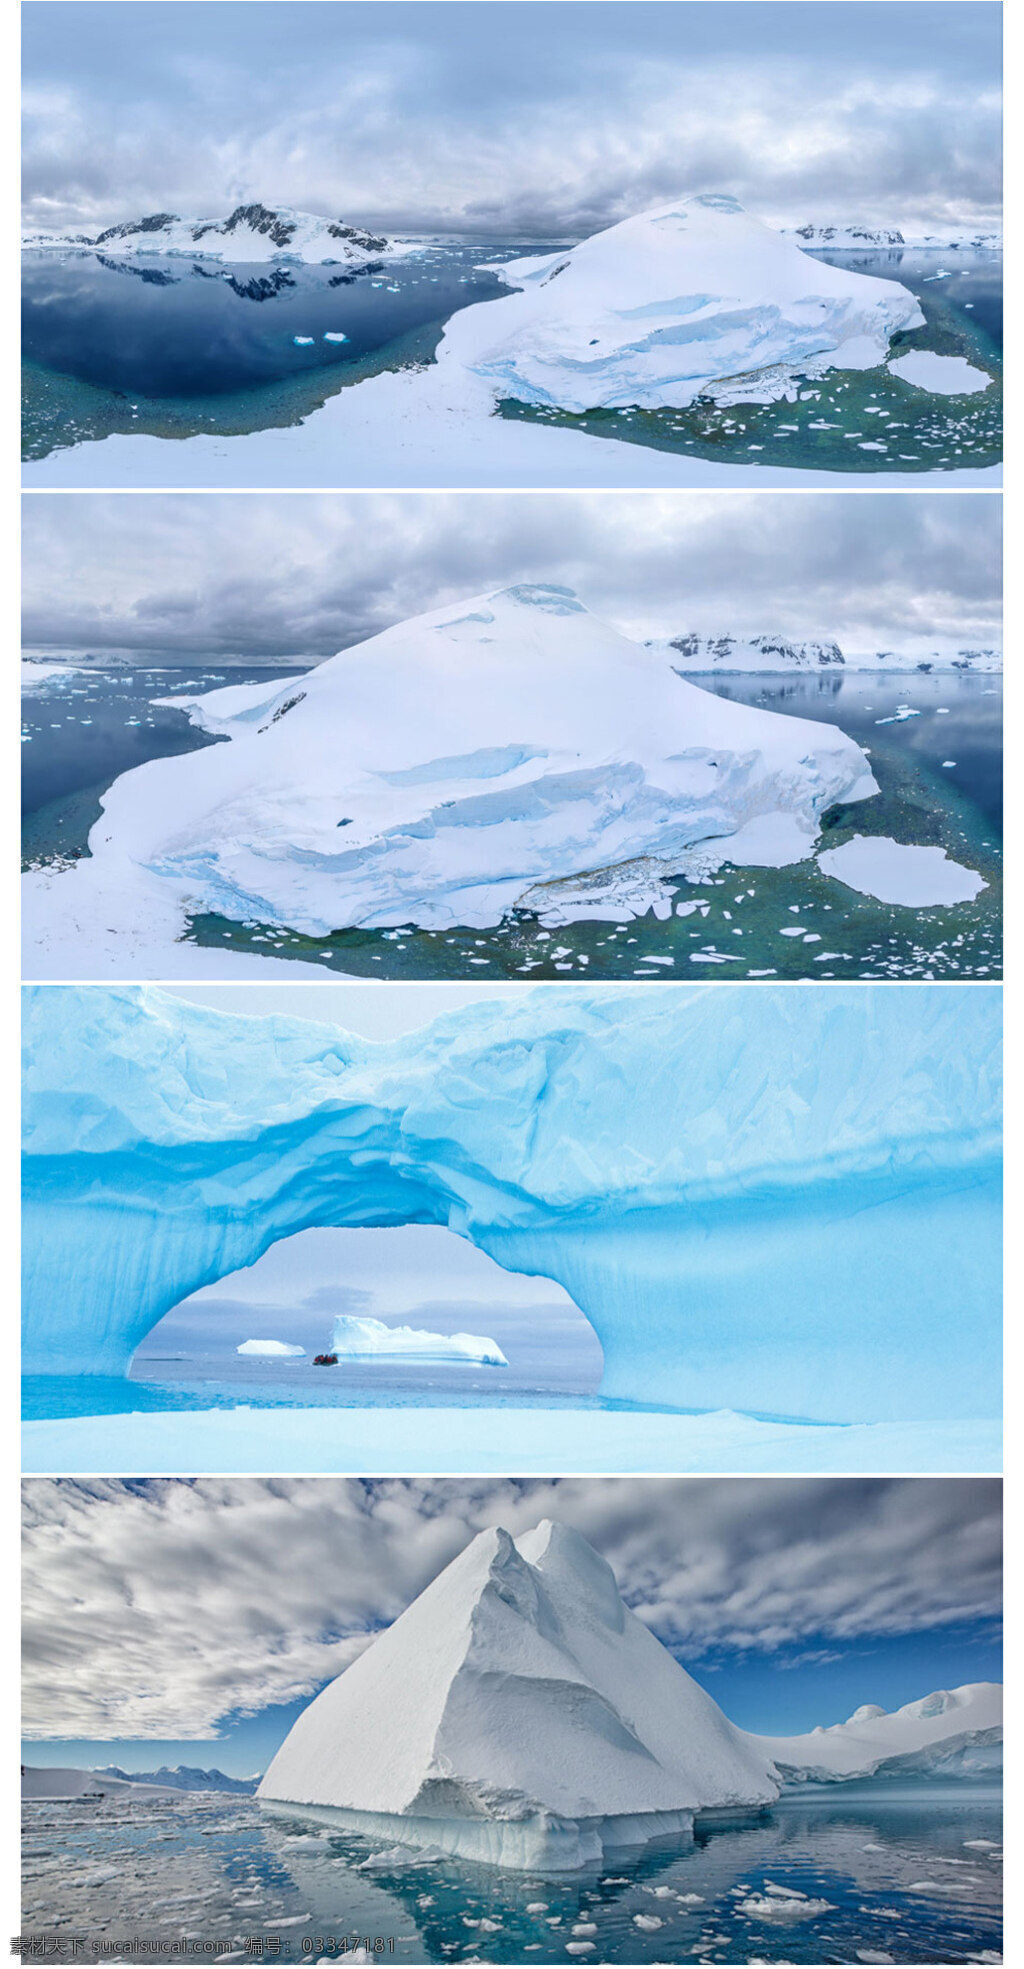 冰山全景图 冬天 冰山 冰岛 全景图 青色 天蓝色